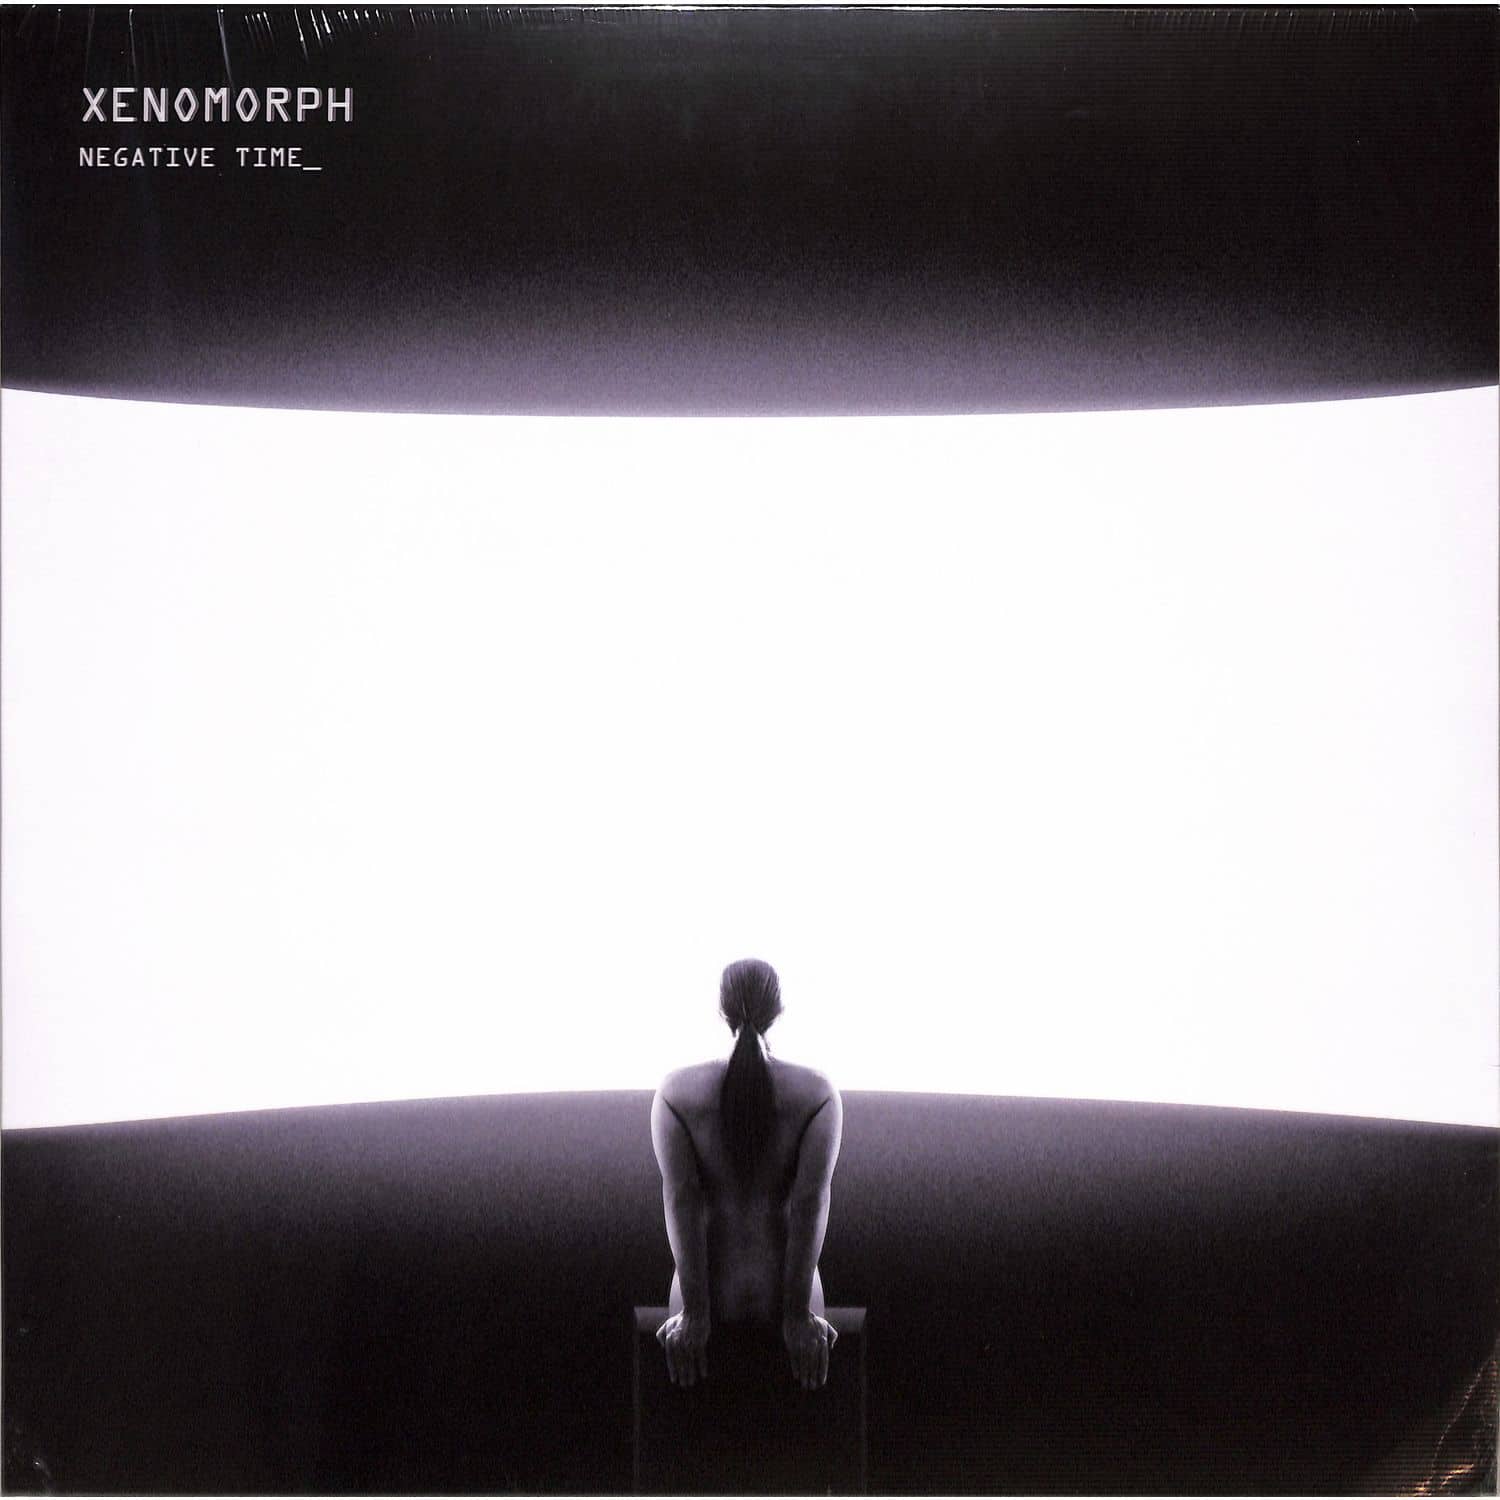 Xenomorph - NEGATIVE TIME EP